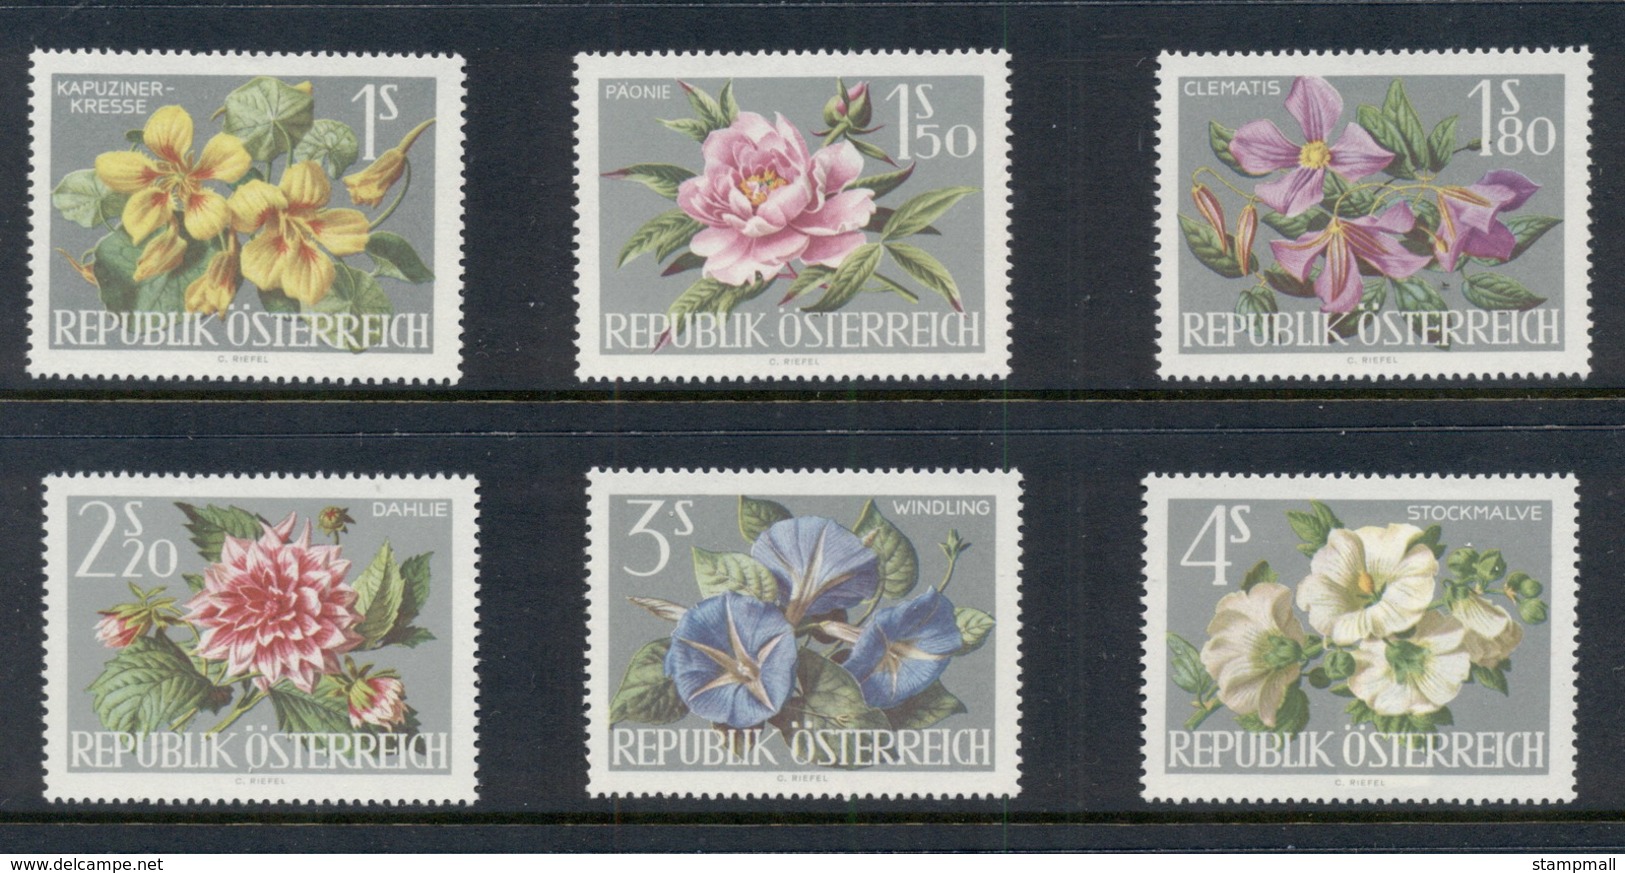 Austria 1964 Vienna Garden Show, Flowers MUH - Unused Stamps